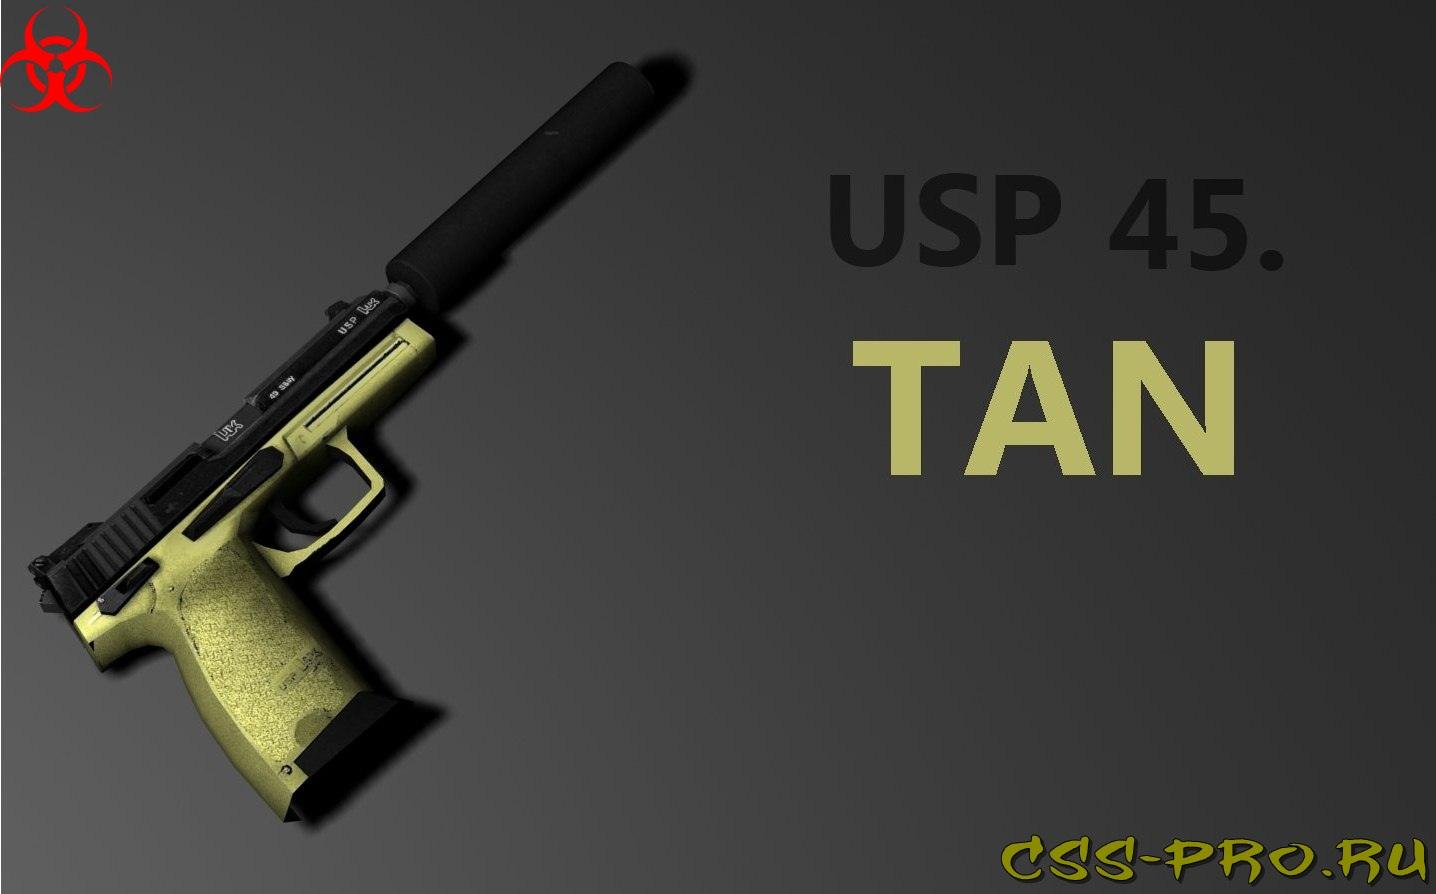 USP 45. Tan